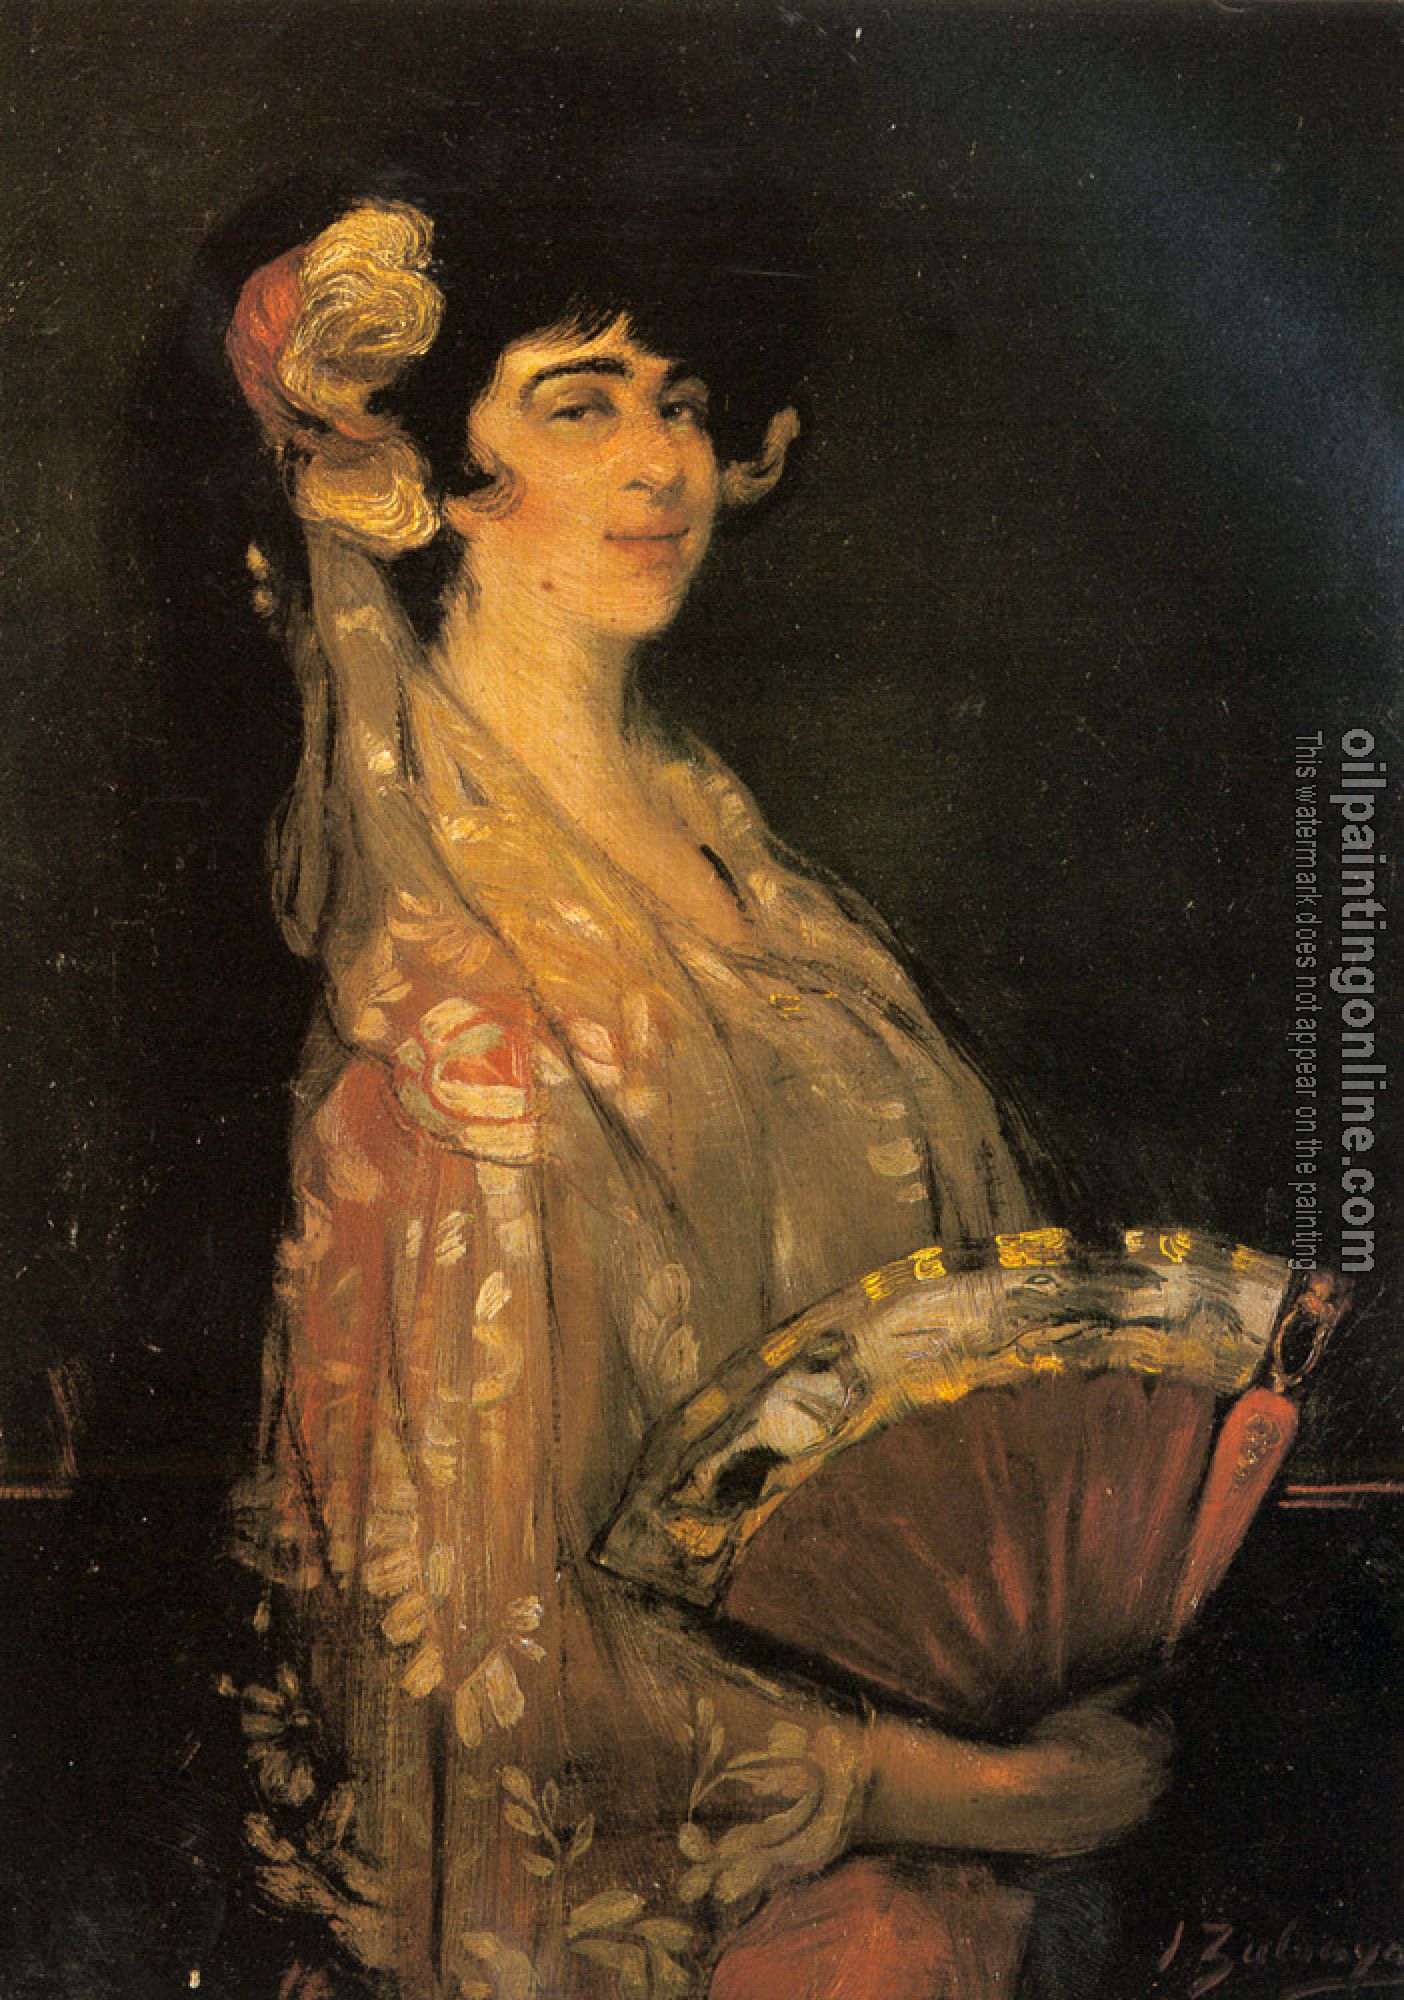 Zabaleta, Ignacio Zuloaga y - An Elegant Lady Fanning Herself